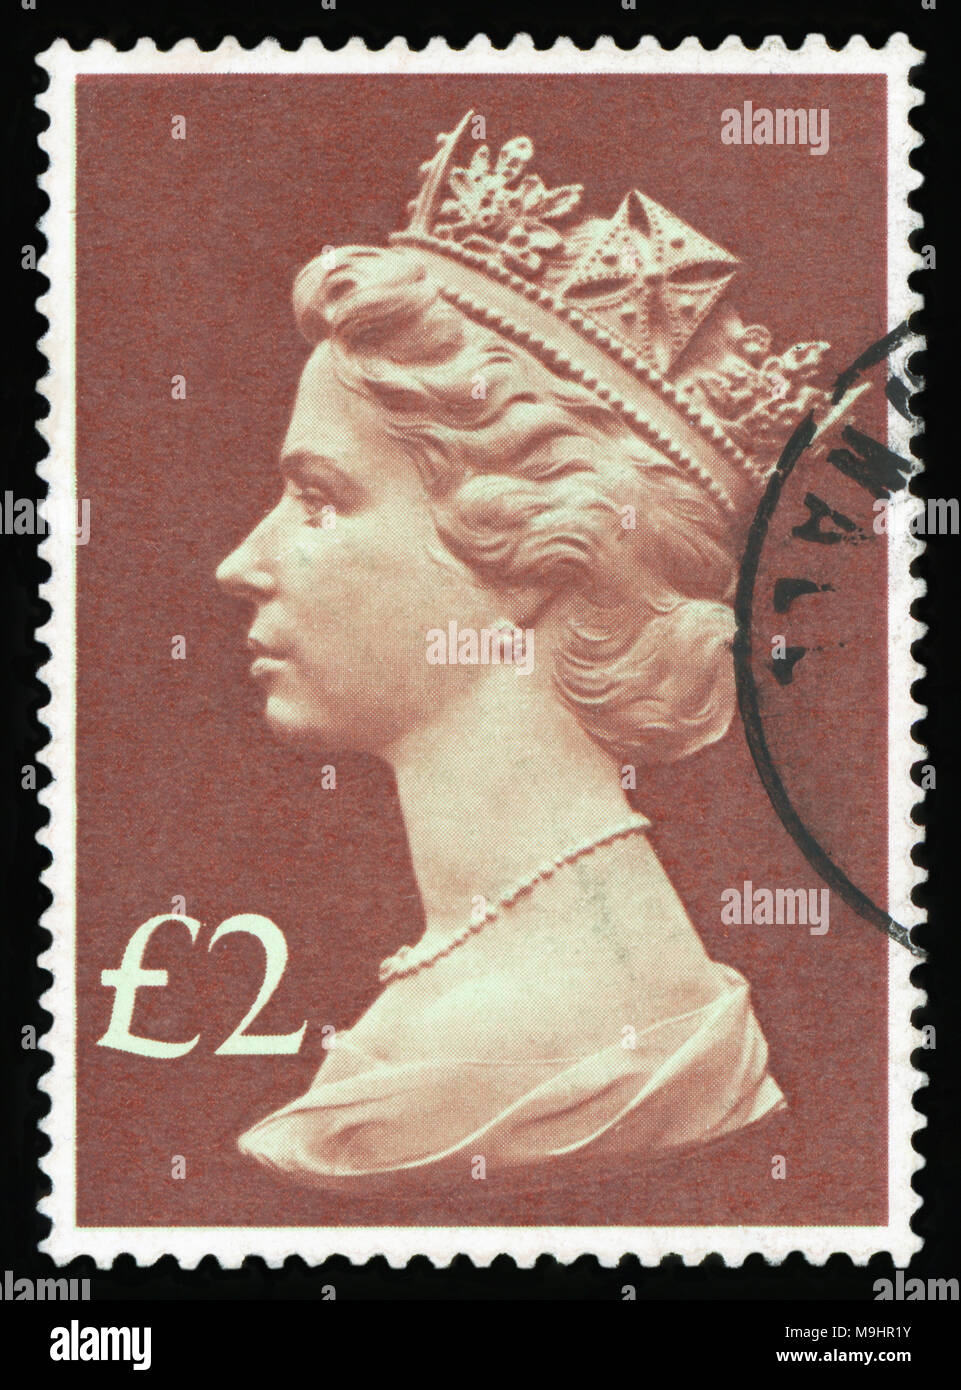 Großbritannien - ca. 1971: Briefmarke im Vereinigten Königreich gedruckt wird Königin von England - Königin Elizabeth II. Profil in der Krone auf einem grünen Hintergrund., ca. Stockfoto